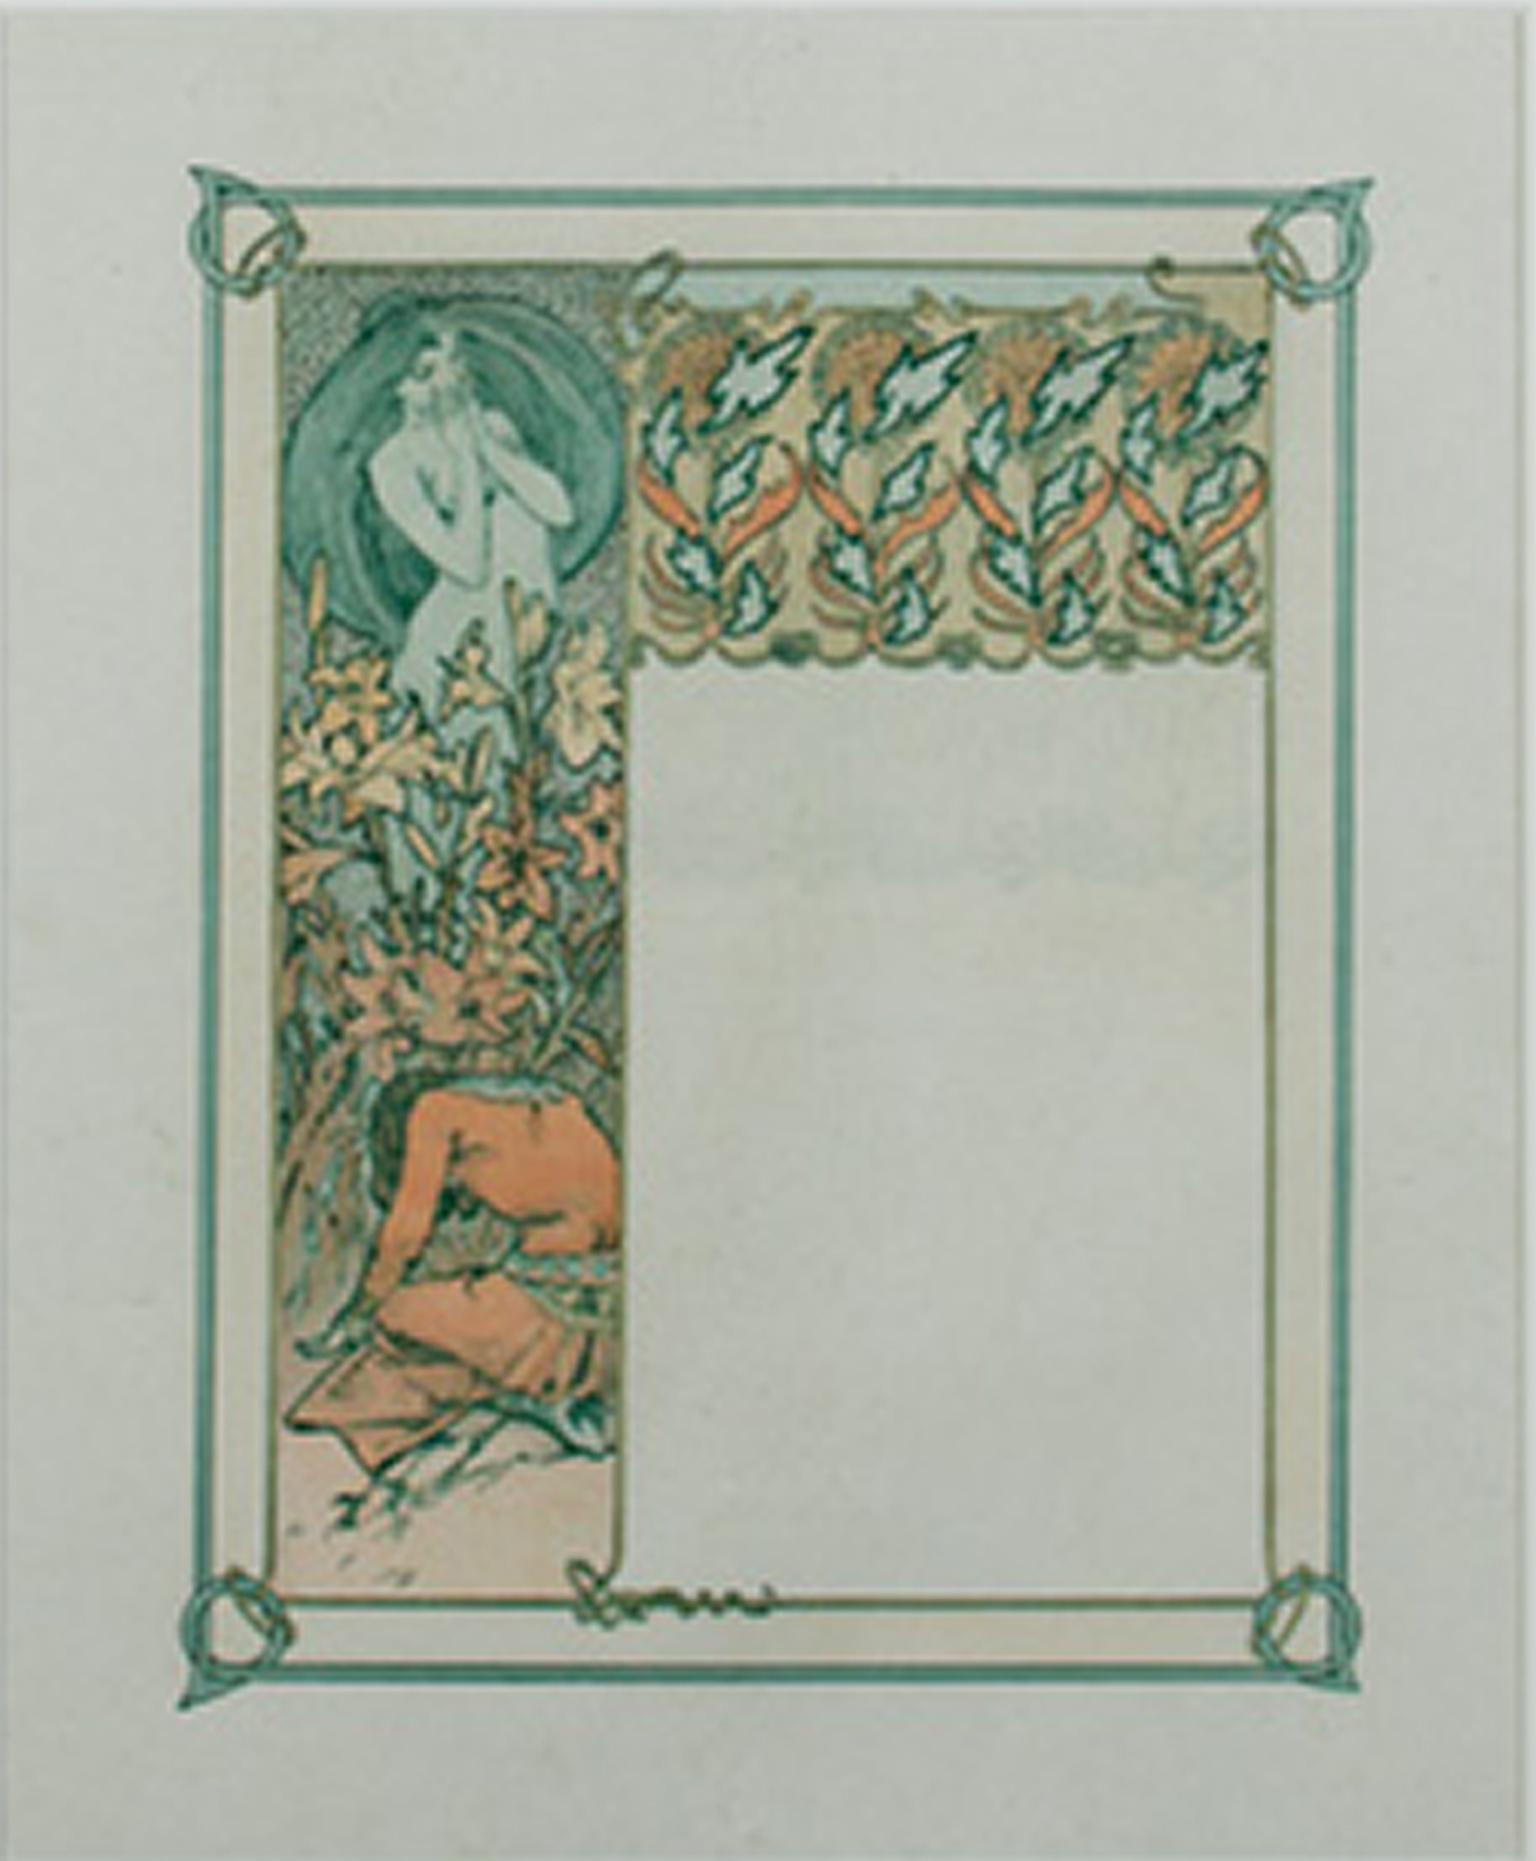 Farblithographie des späten 19. Jahrhunderts, Jugendstil, Blumenpflanzgefäße, Figuren, blau-orange (Art nouveau), Print, von Alphonse Mucha